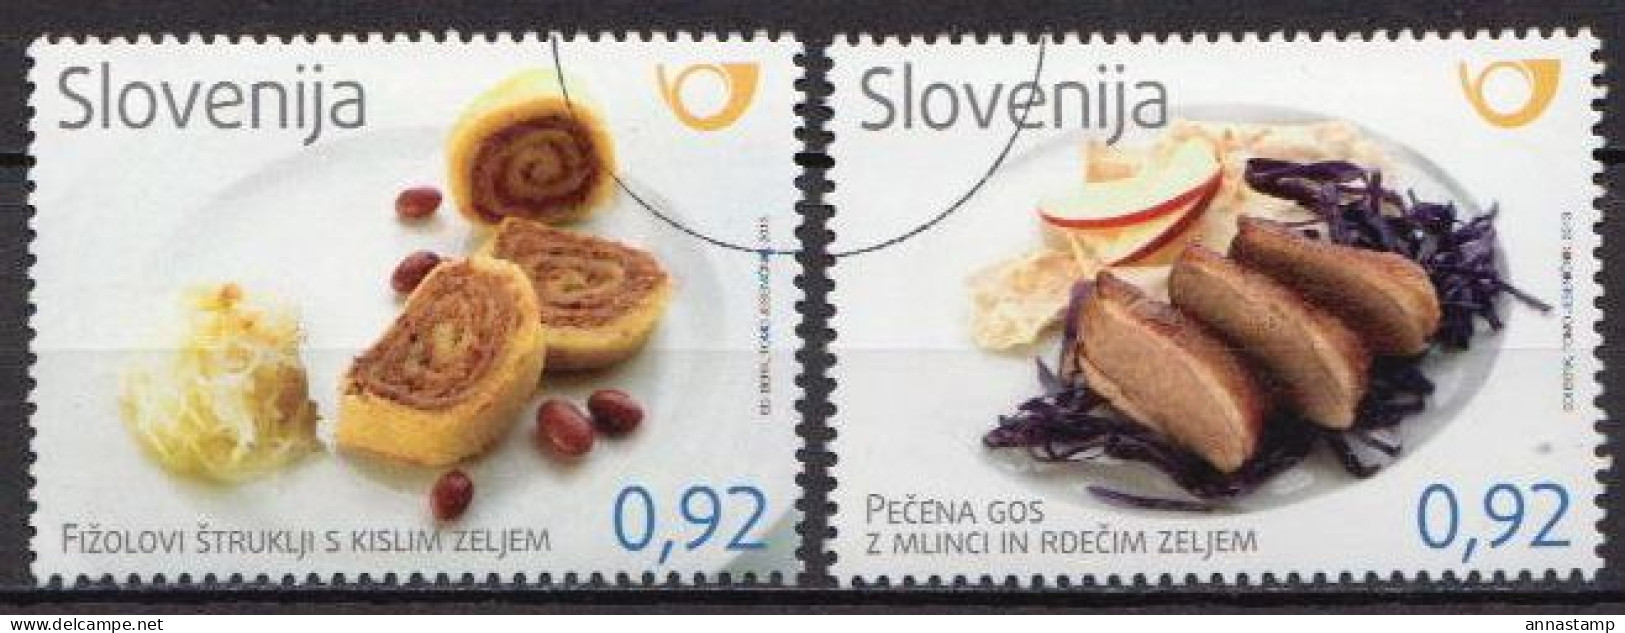 Slovenia MNH Stamps, Specimen - Alimentación